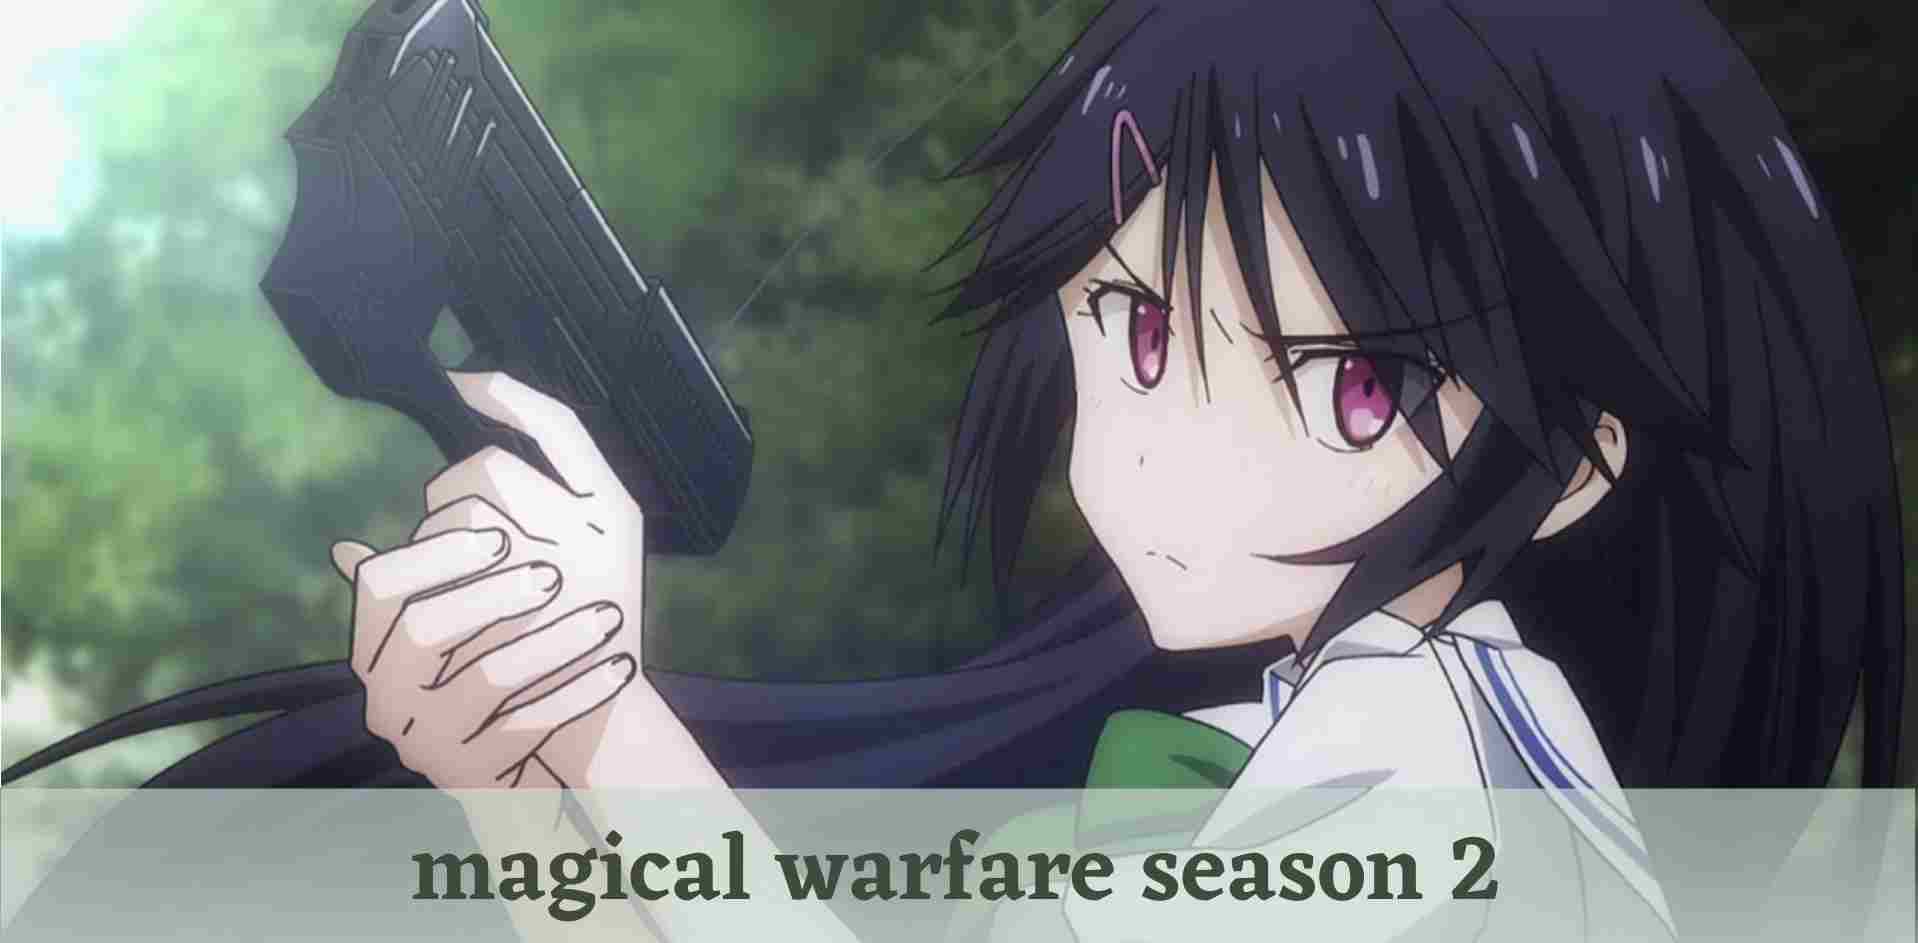 magical warfare season 2